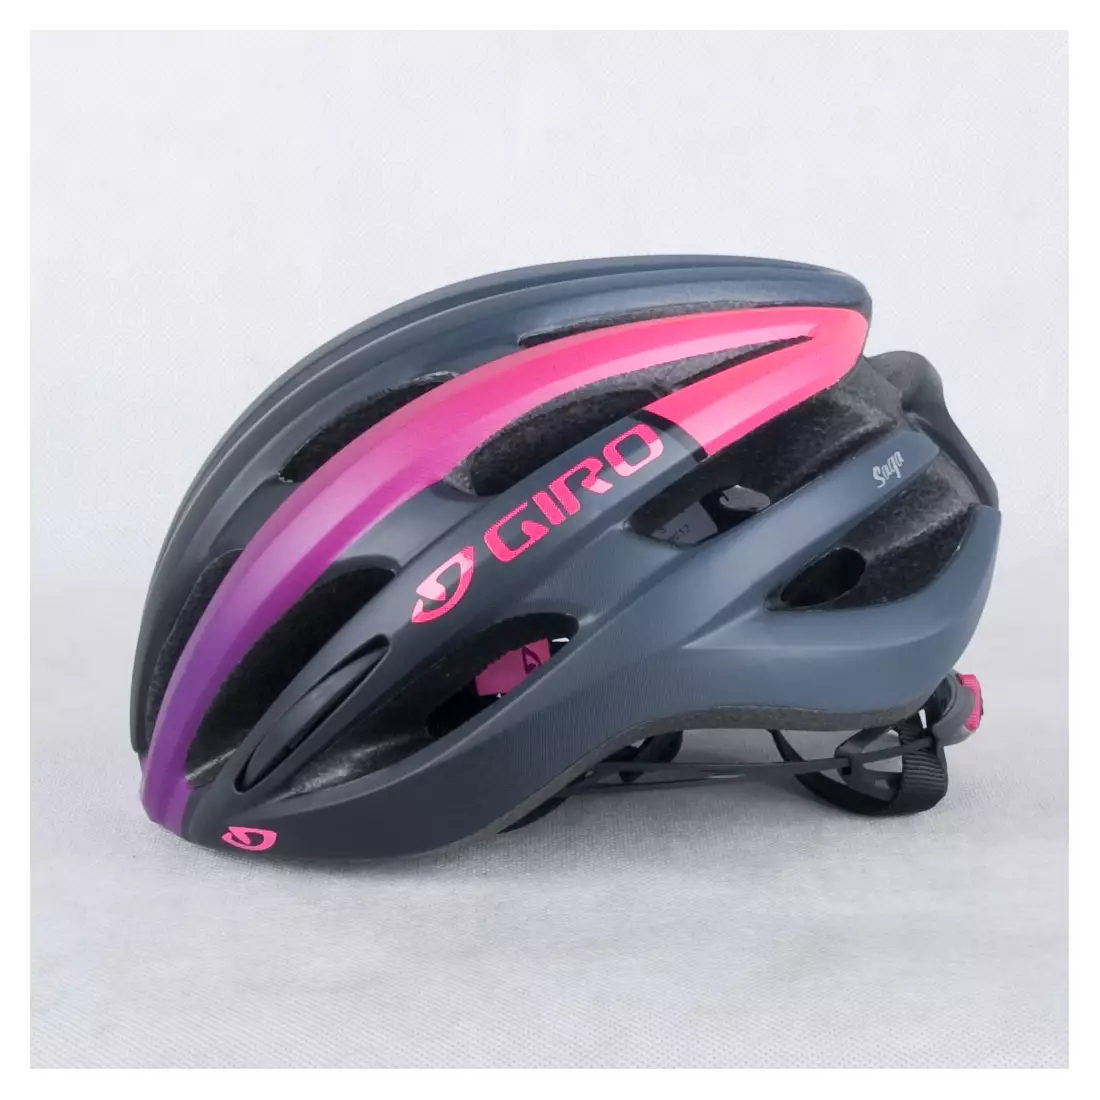 GIRO SAGA - dámska cyklistická prilba čiernej a ružovej farby